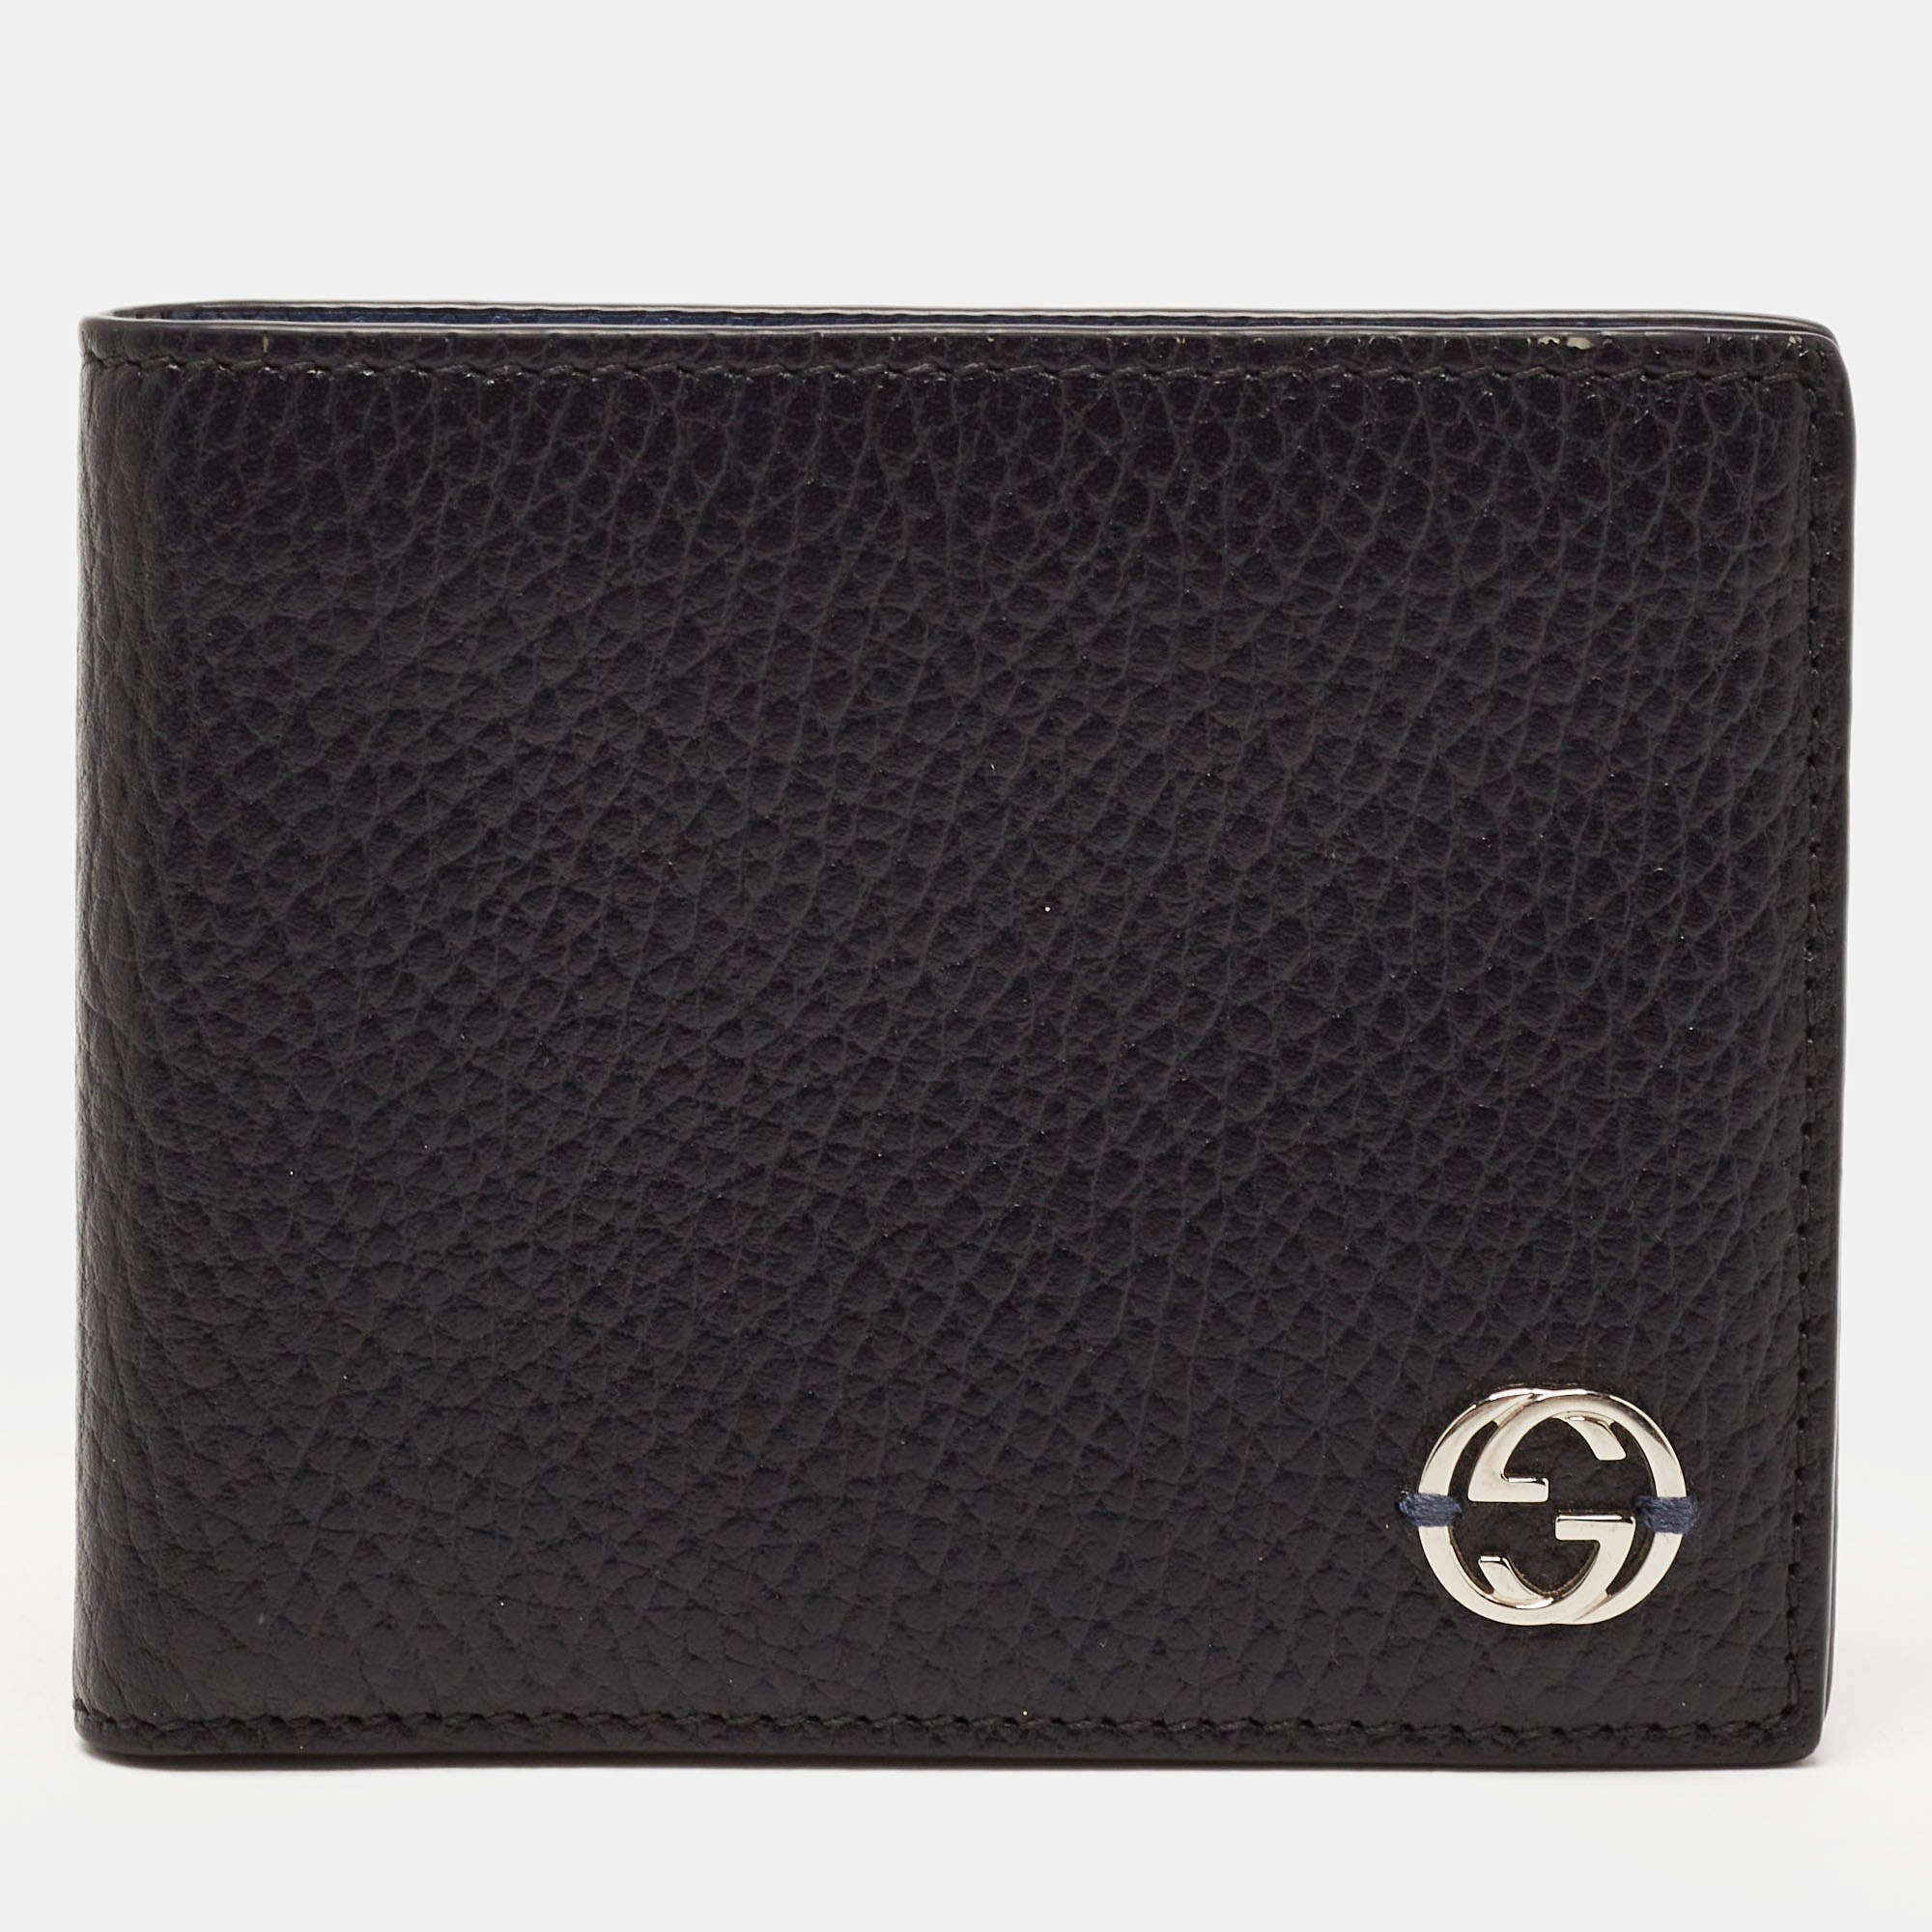 Gucci Black Leather Interlocking G Bifold Wallet 